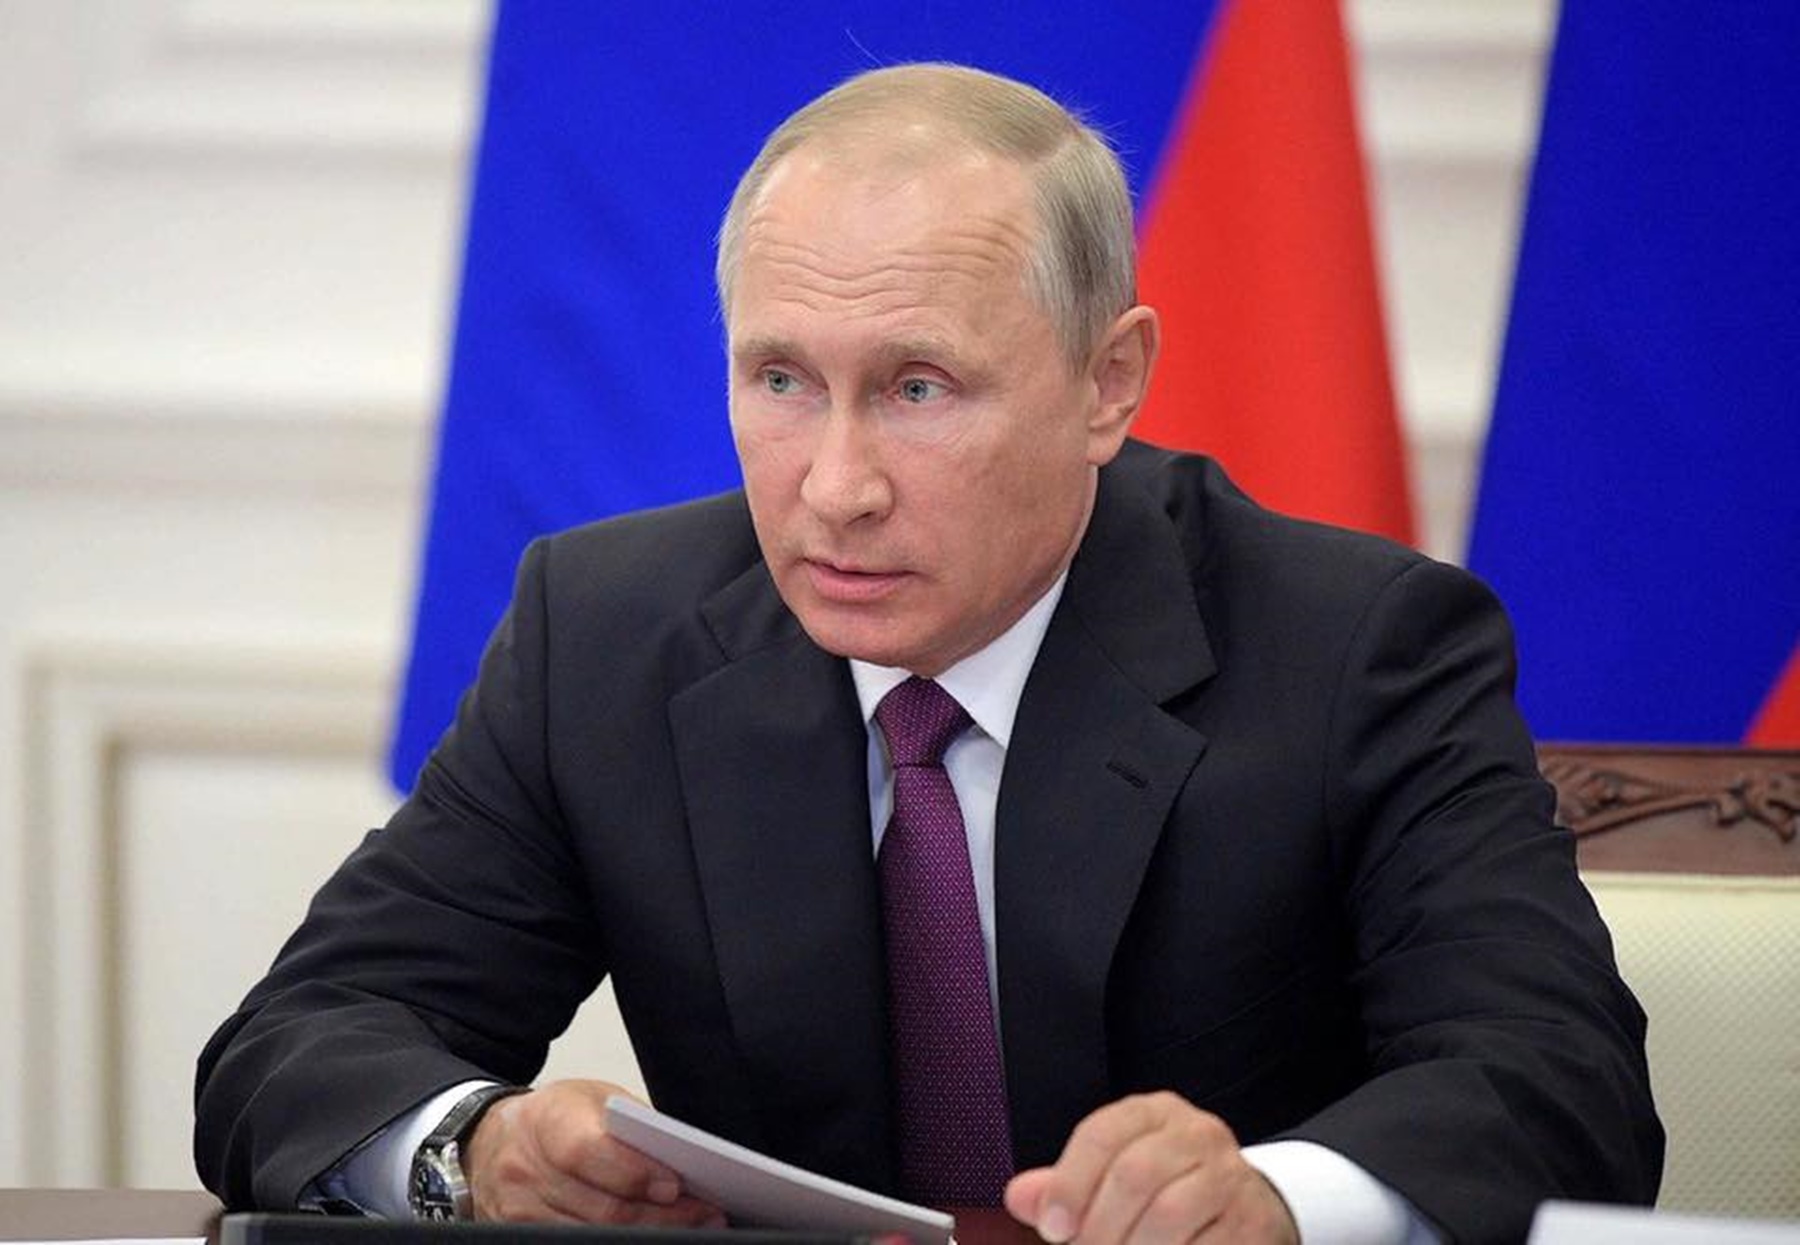 Μπάιντεν – Πούτιν συνάντηση: Πάει για το καλοκαίρι, άγνωστη η ημερομηνία